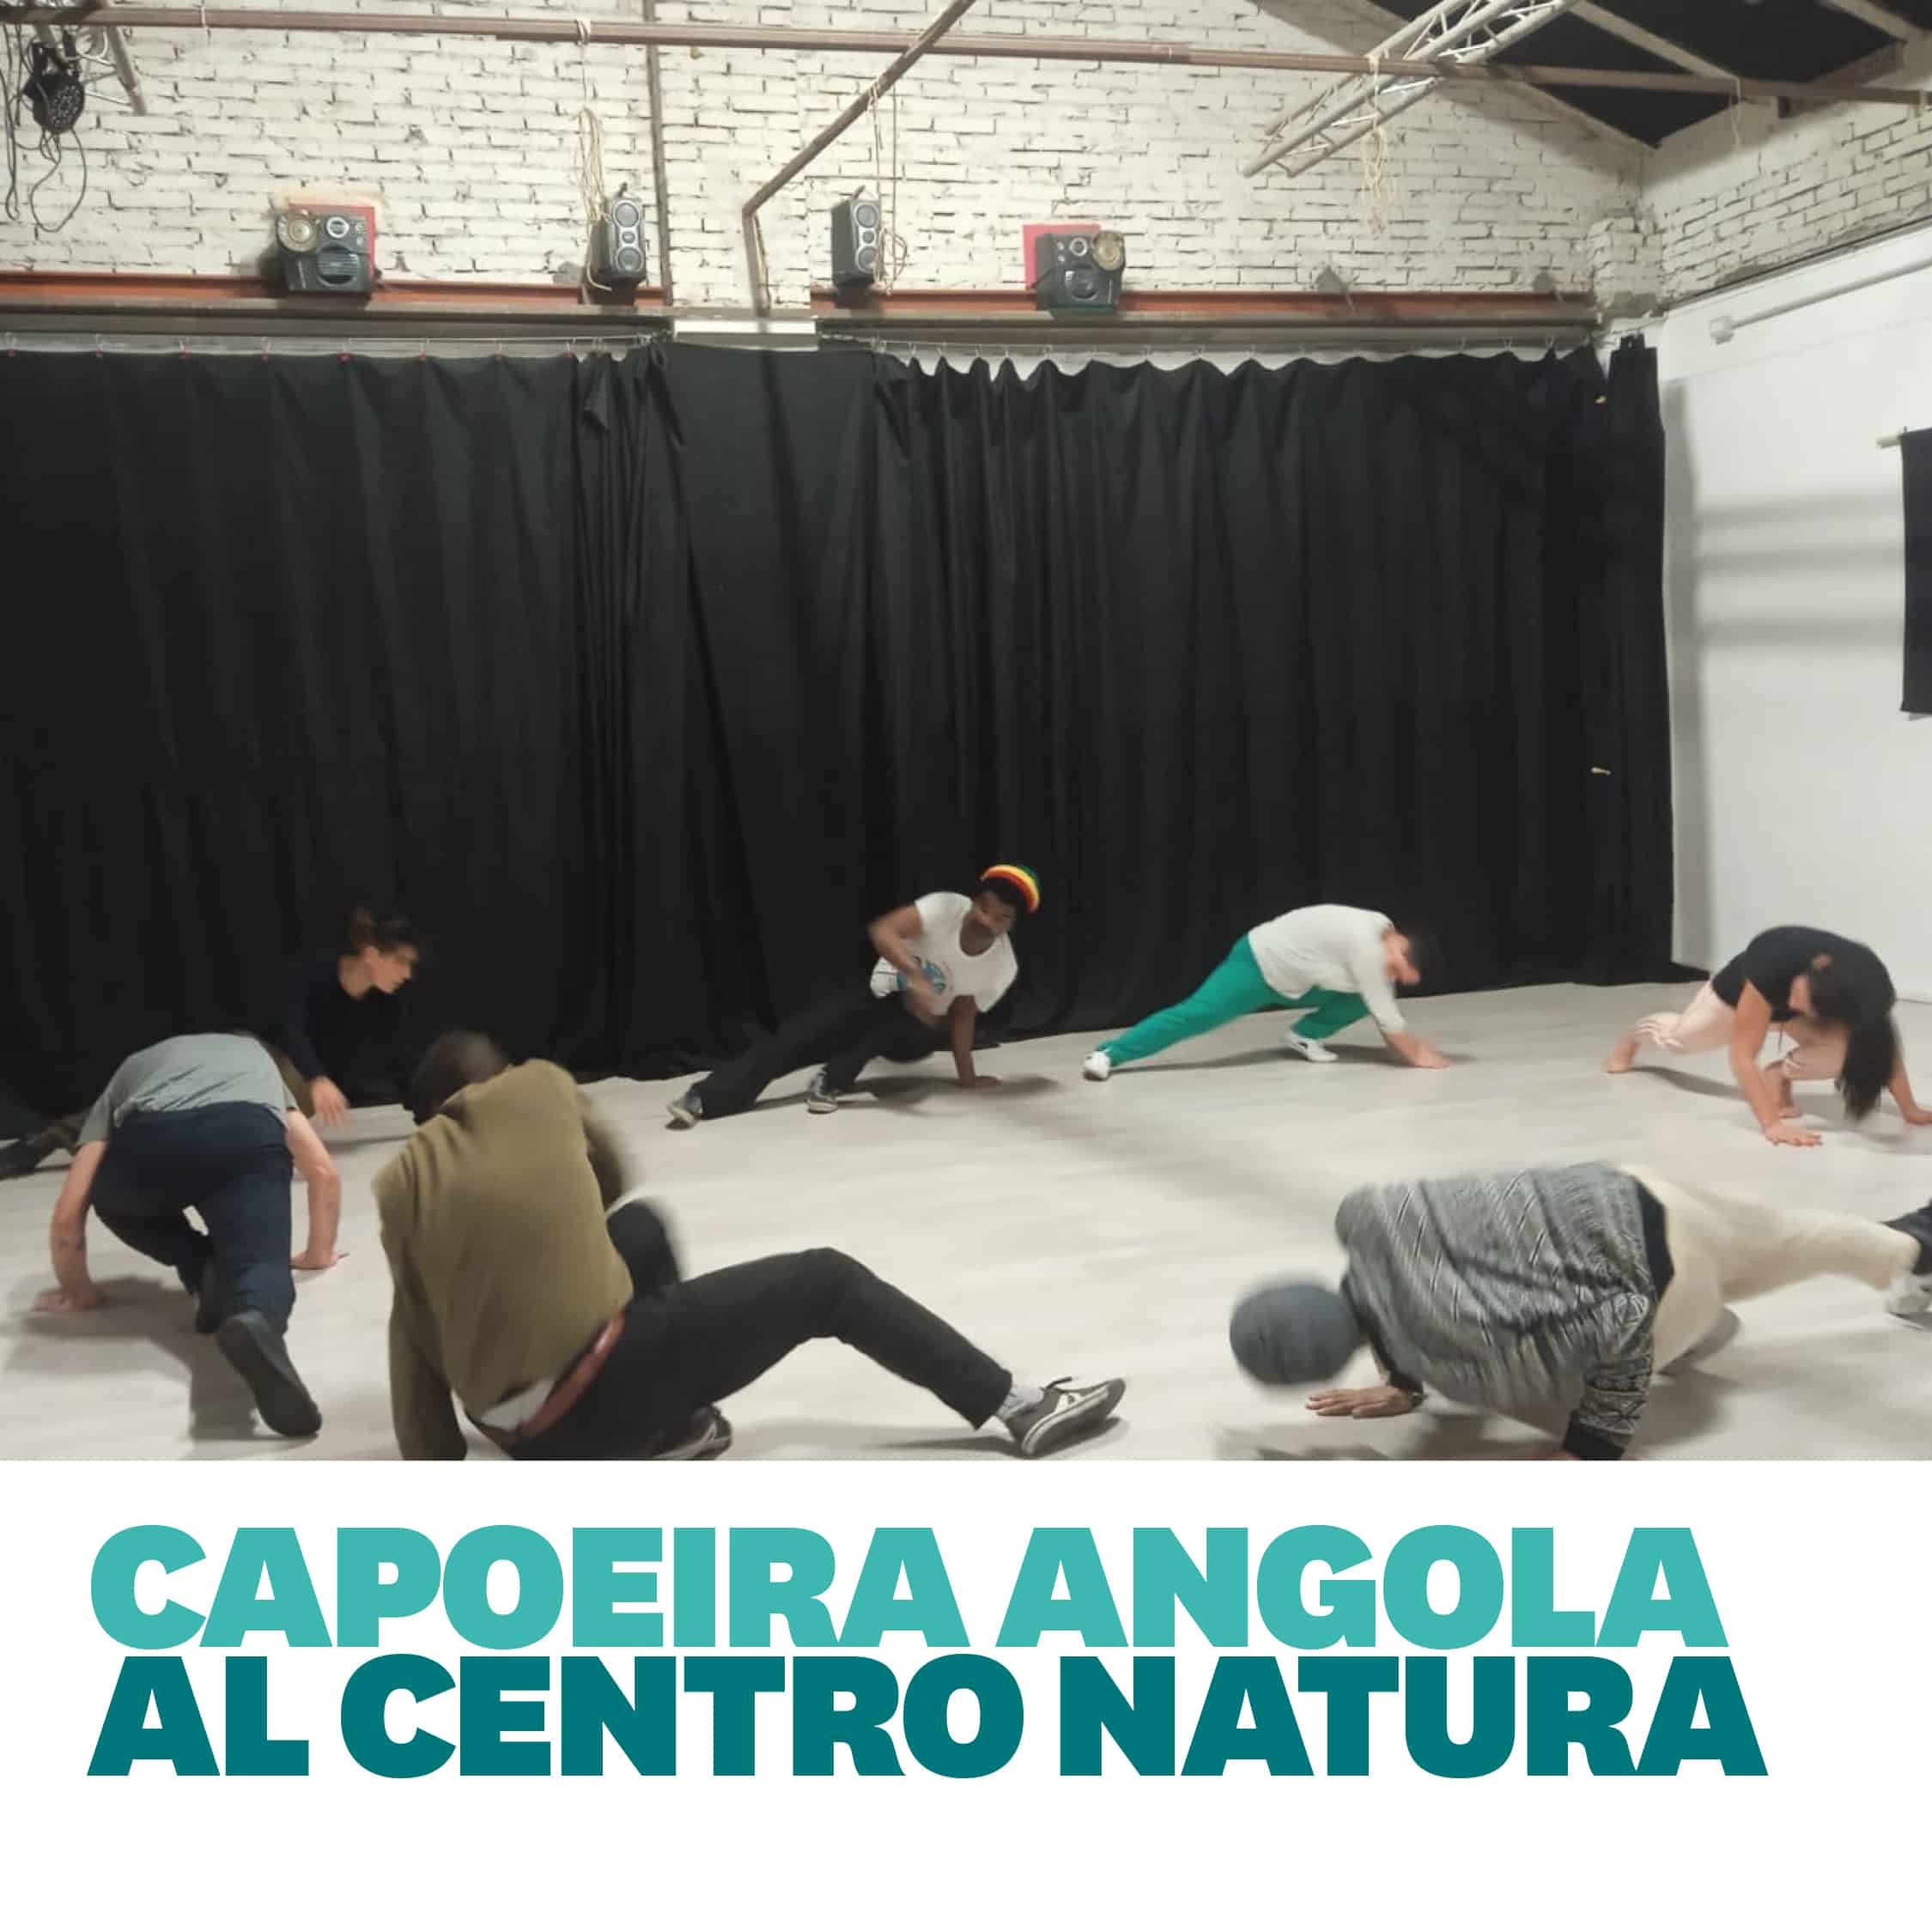 Al momento stai visualizzando Capoeira Angola al Centro Natura